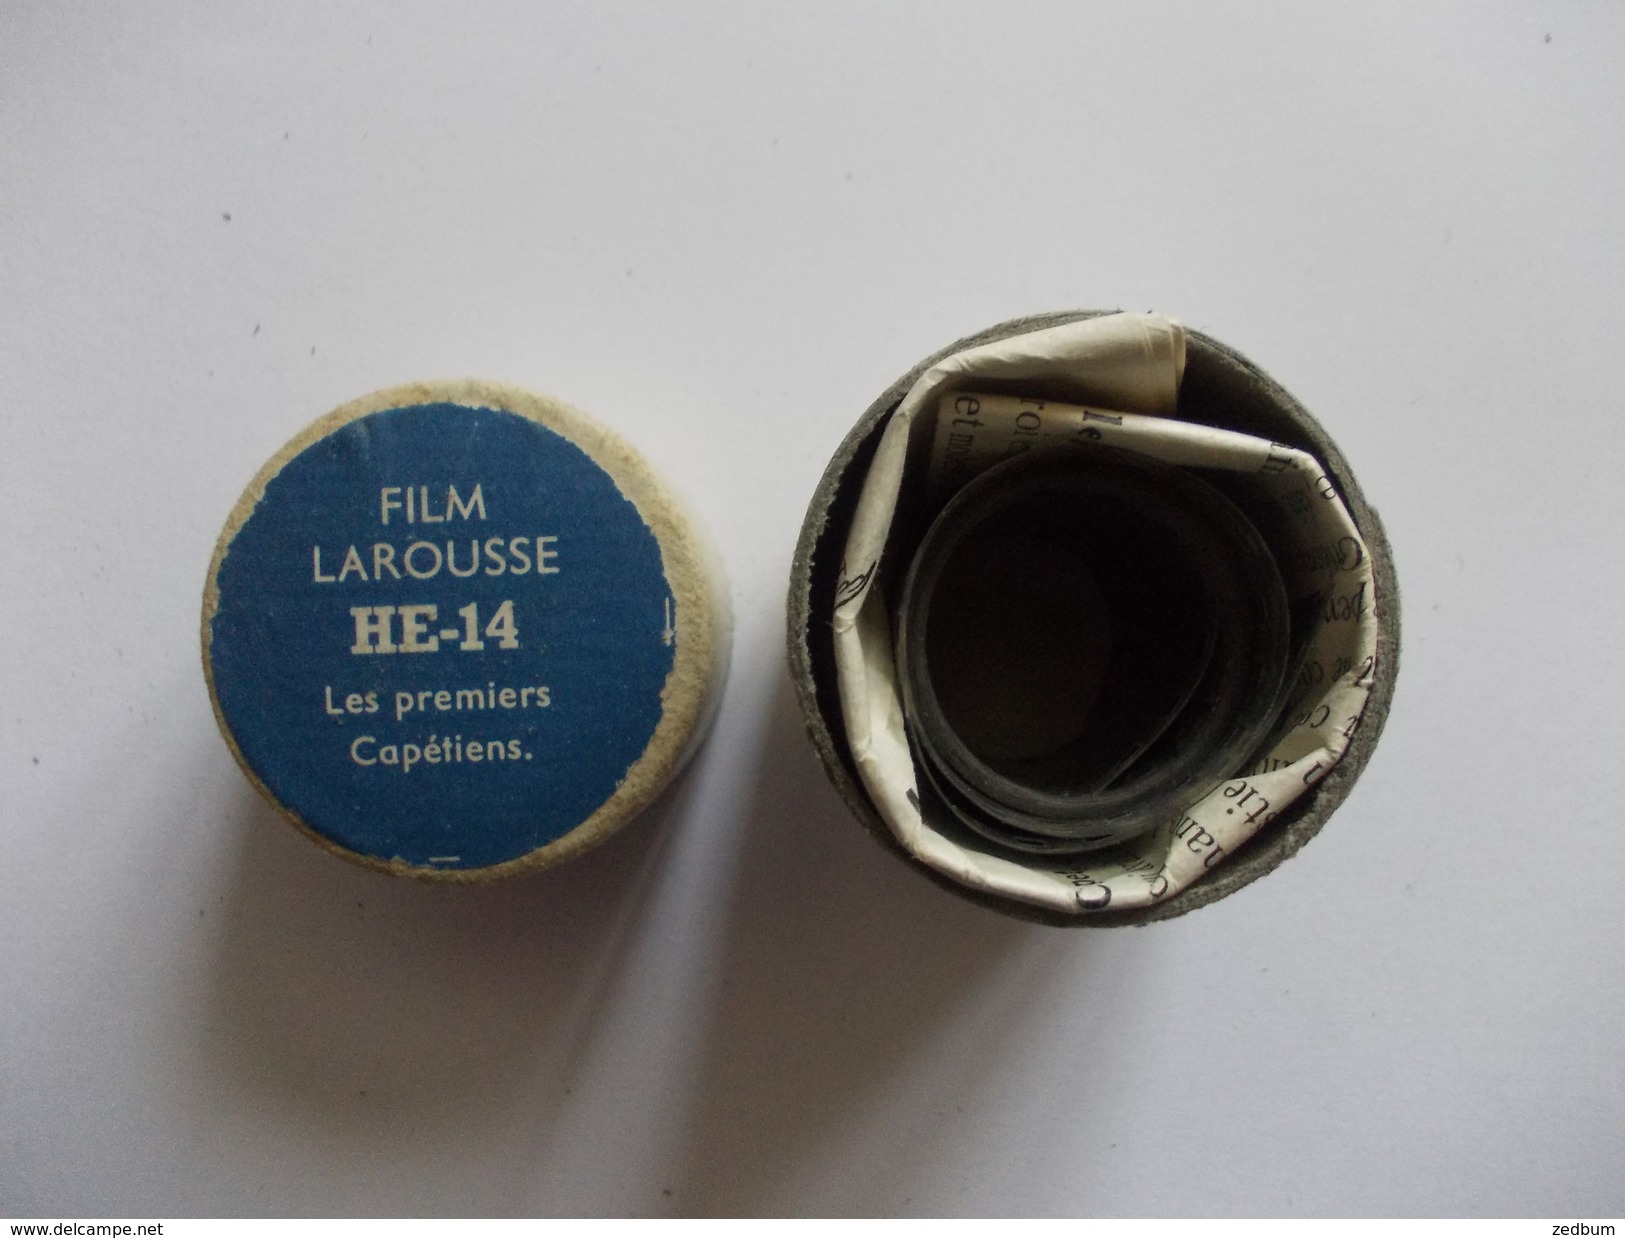 FILM FIXE Larousse HE-14 Les Premiers Capétiens - 35mm -16mm - 9,5+8+S8mm Film Rolls